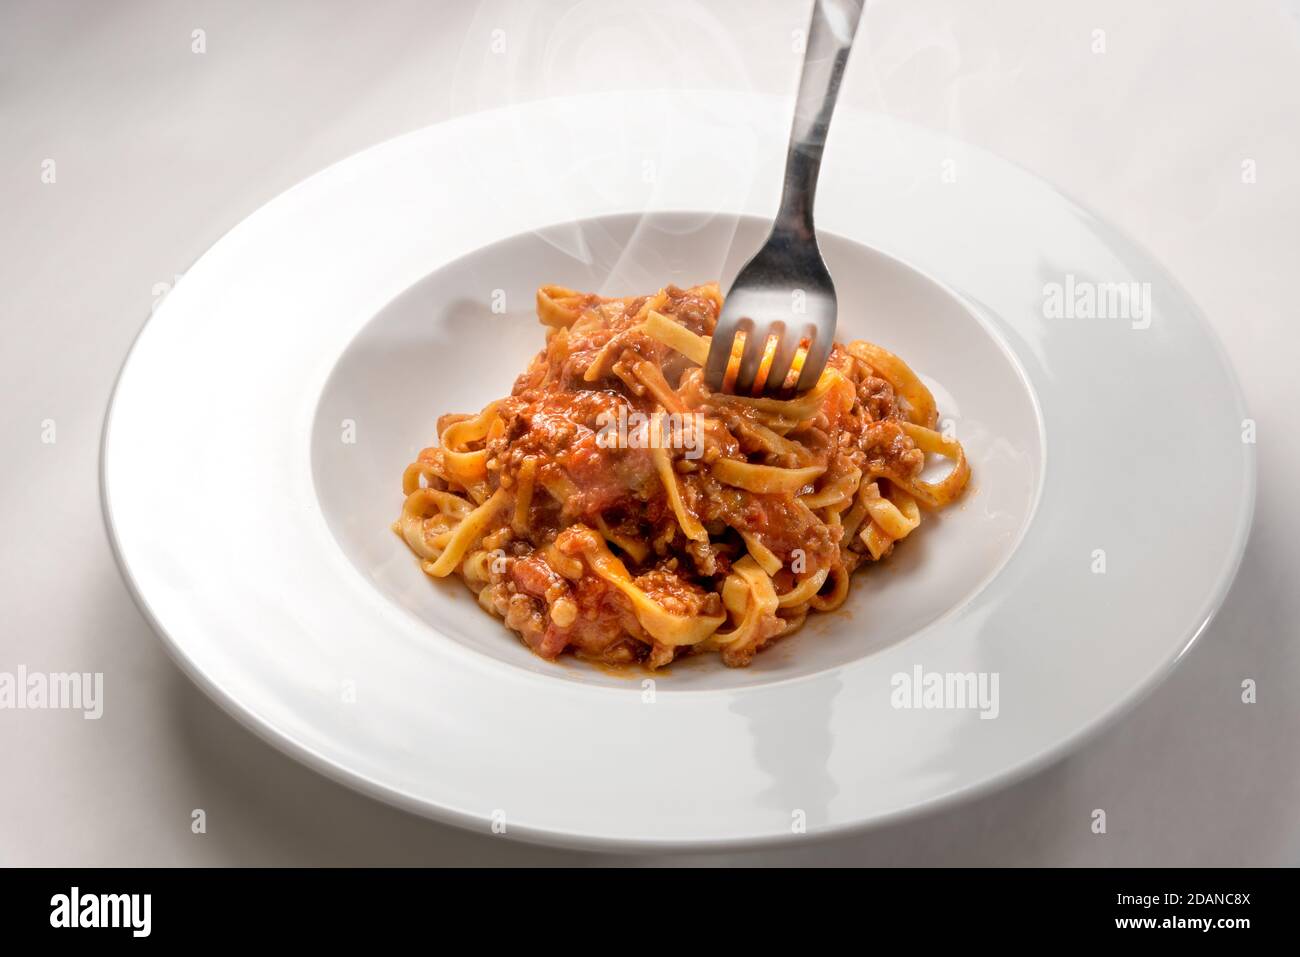 Spaghetti auf Ei-Basis (italienische Tagliatelle) mit Fleisch und Tomatensauce Whit Gabel gekrönt, gedämpft in einem Teller auf weißem Hintergrund Stockfoto